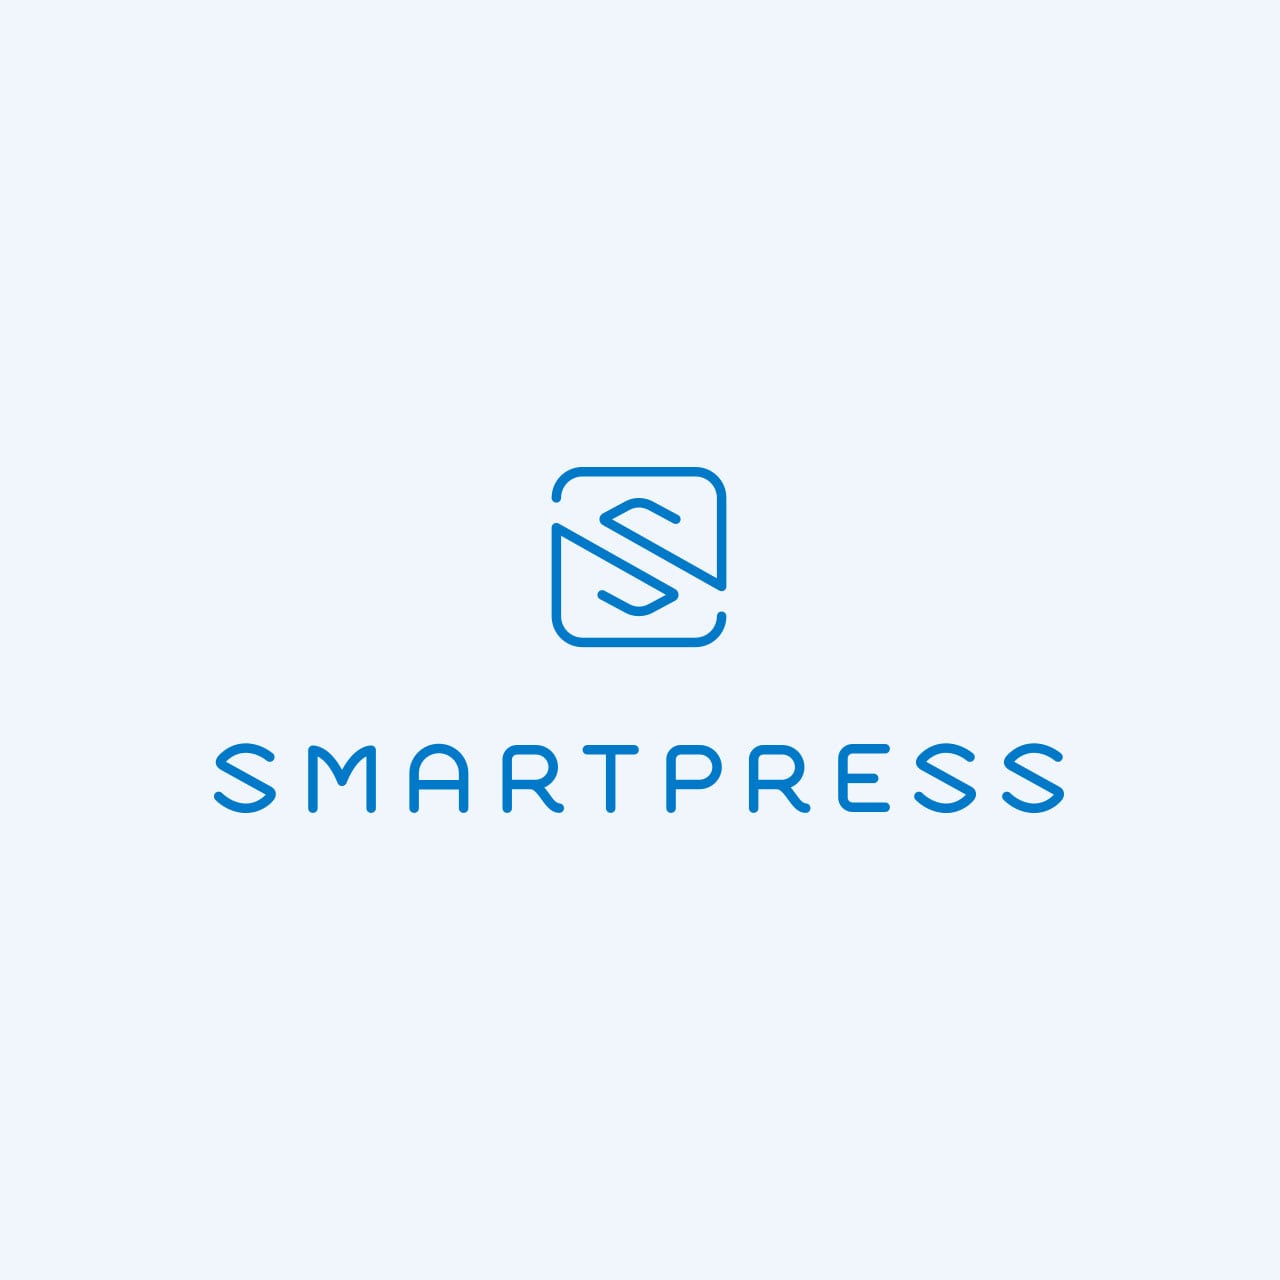 The Smartpress name below the Smartpress logo in blue color.